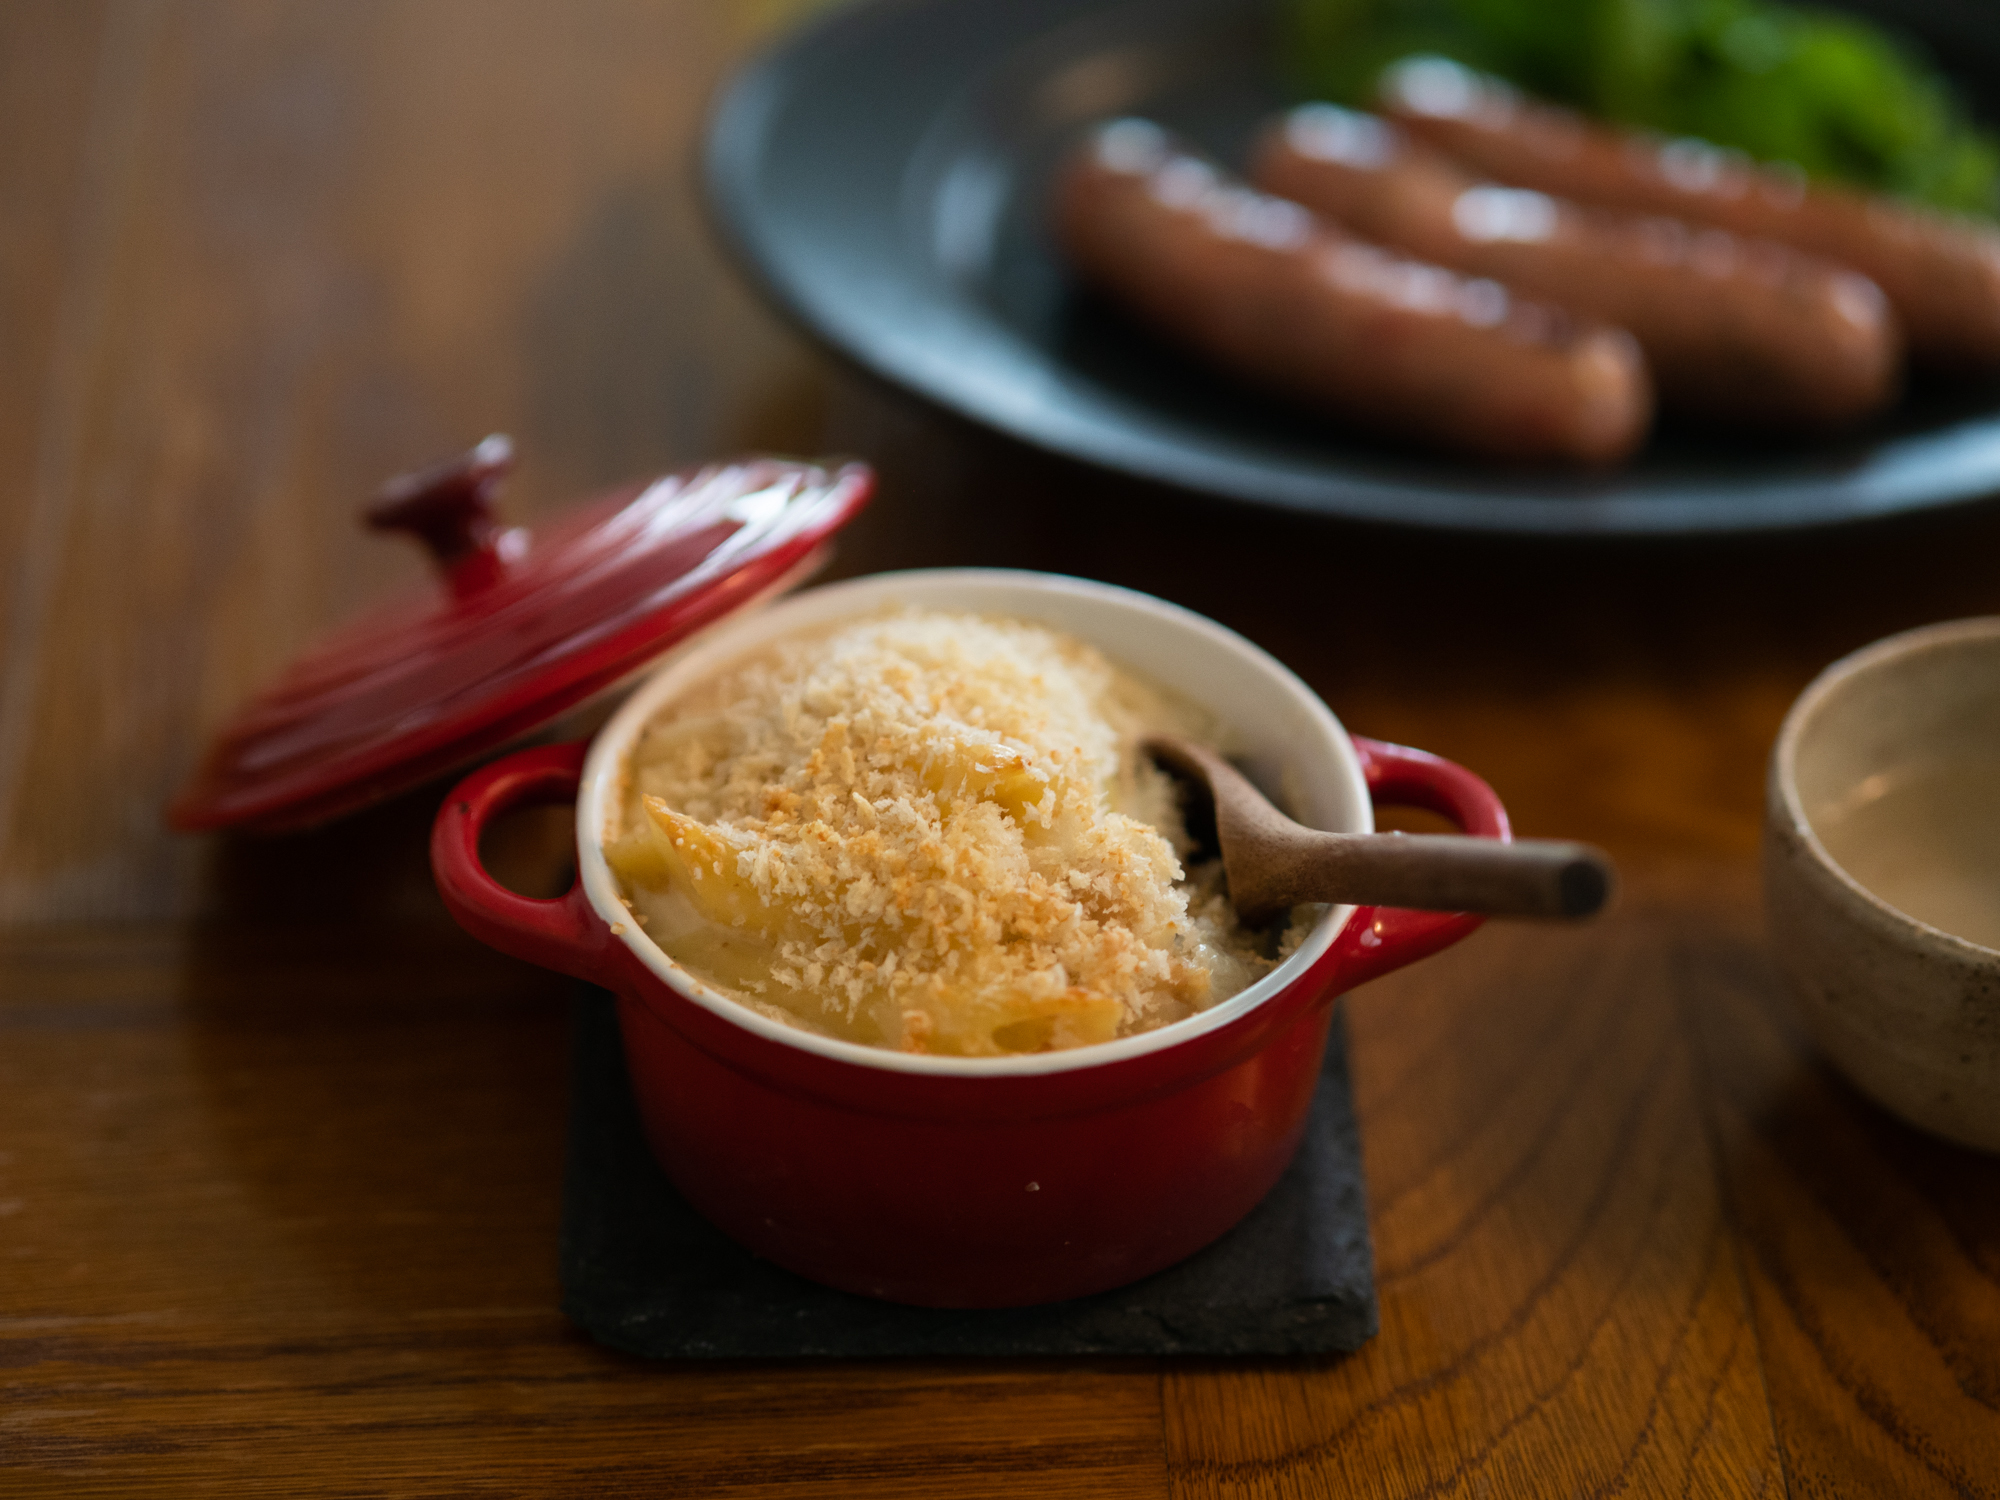 意外な組み合わせの、熱々とろ〜りの「マカロニグラタン」と「塩麹ソーセージ」は、熊澤酒造内にある〈mokichi baker & sweets〉のもの。